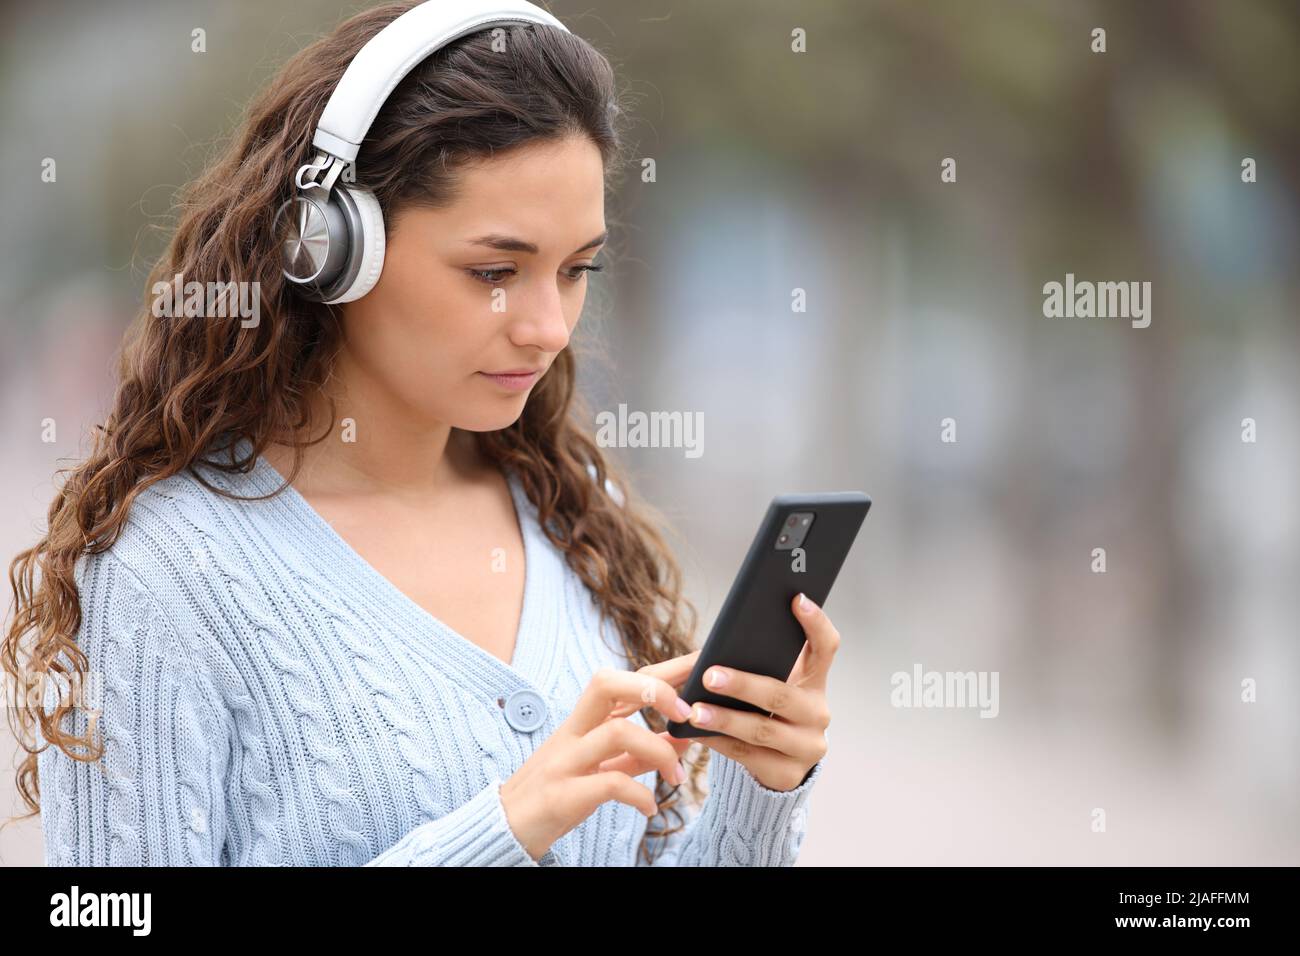 Eine seriöse Frau mit kabellosen Kopfhörern, die Musik hört und ihr Smartphone auf der Straße abhört Stockfoto